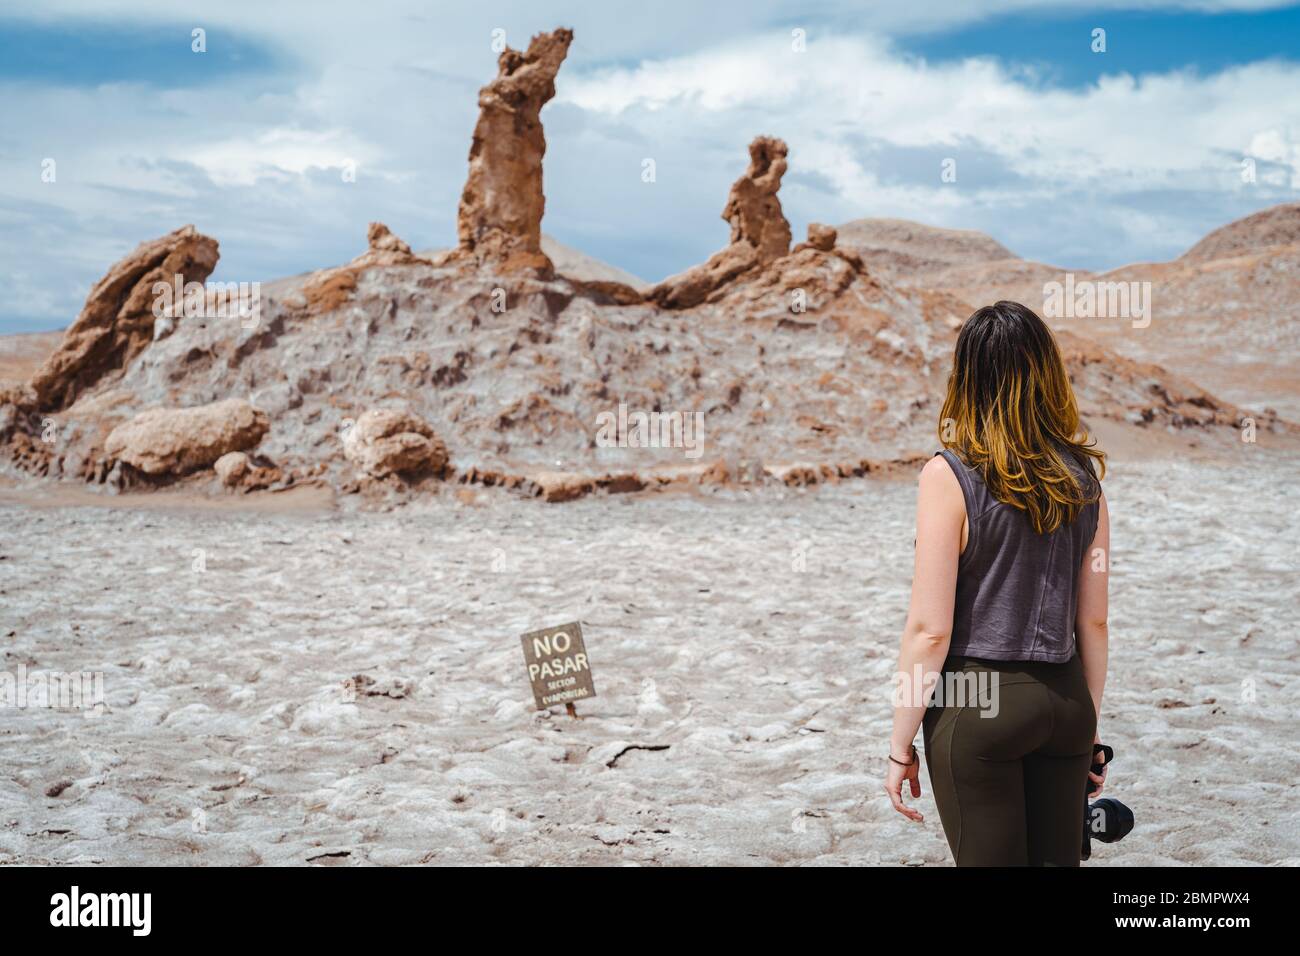 Femme voyageur à la formation rocheuse de trois Marias (espagnol: Las Tres Marias) dans la vallée de la Lune dans le désert d'Atacama, Chili. Banque D'Images